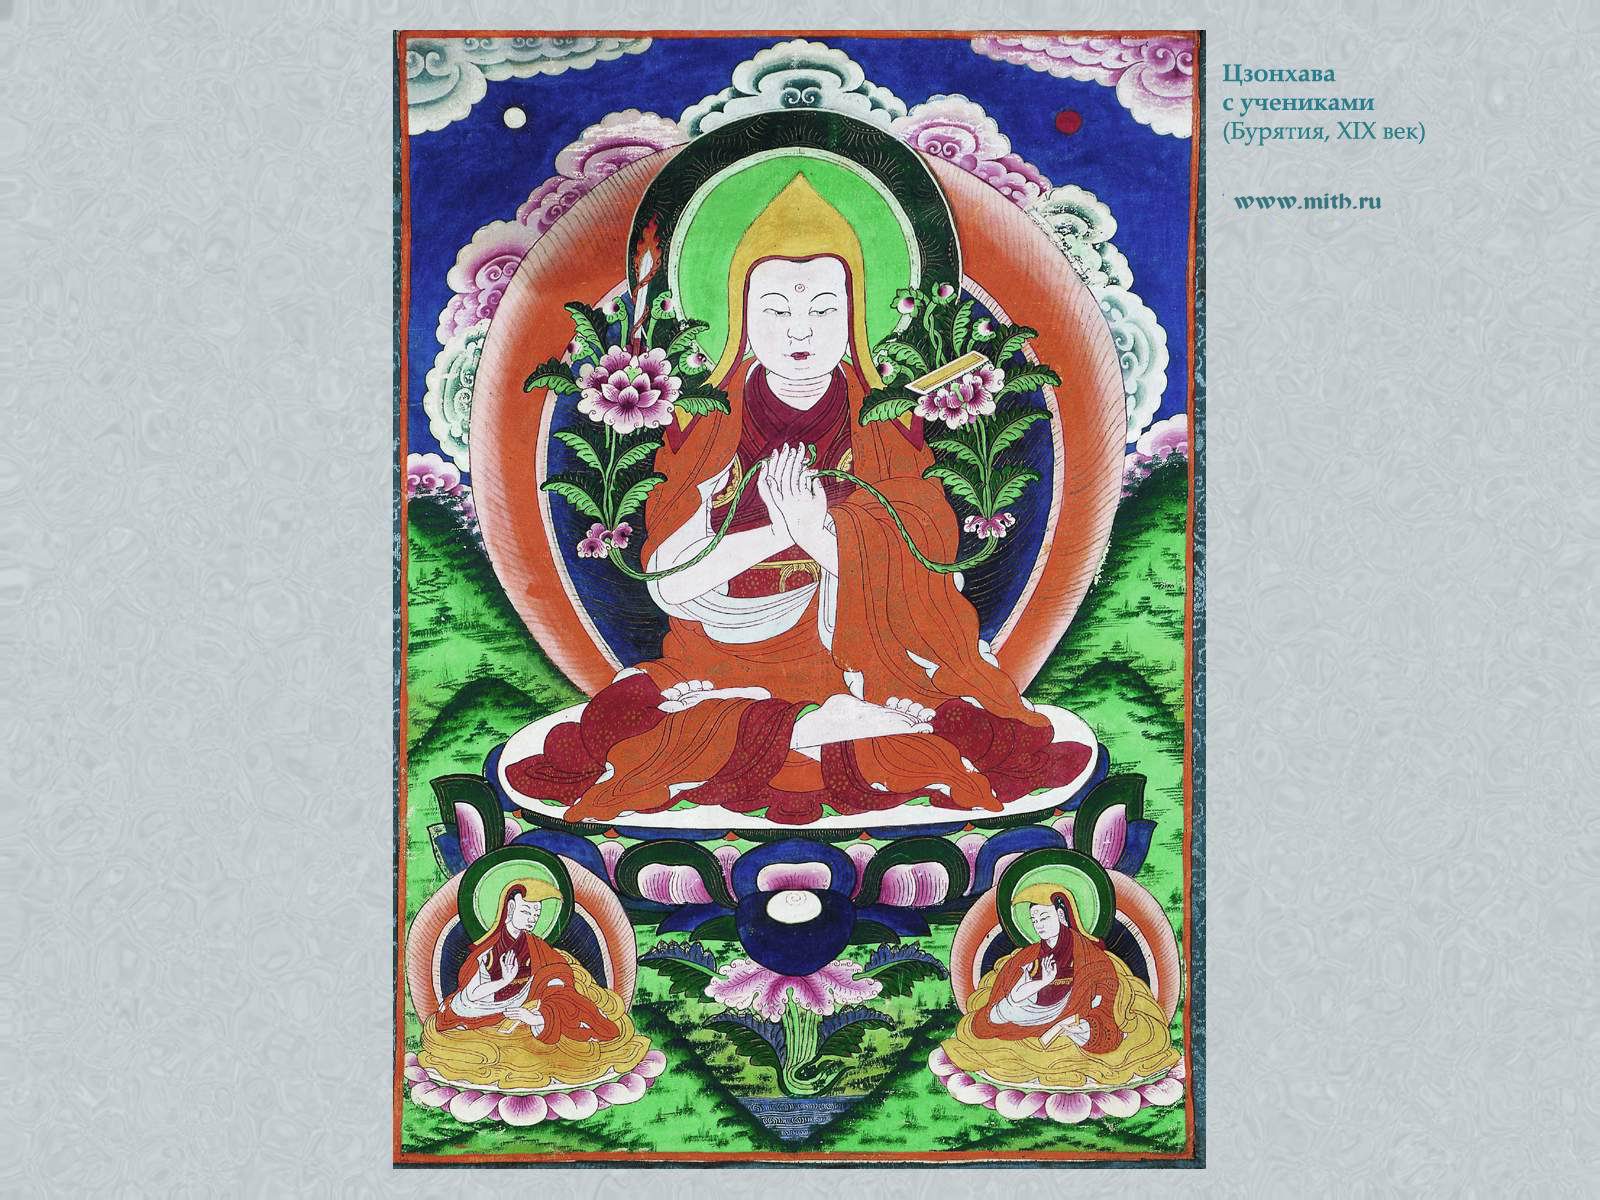 Цзонхава,

перейти к книге 'Тибетская живопись'